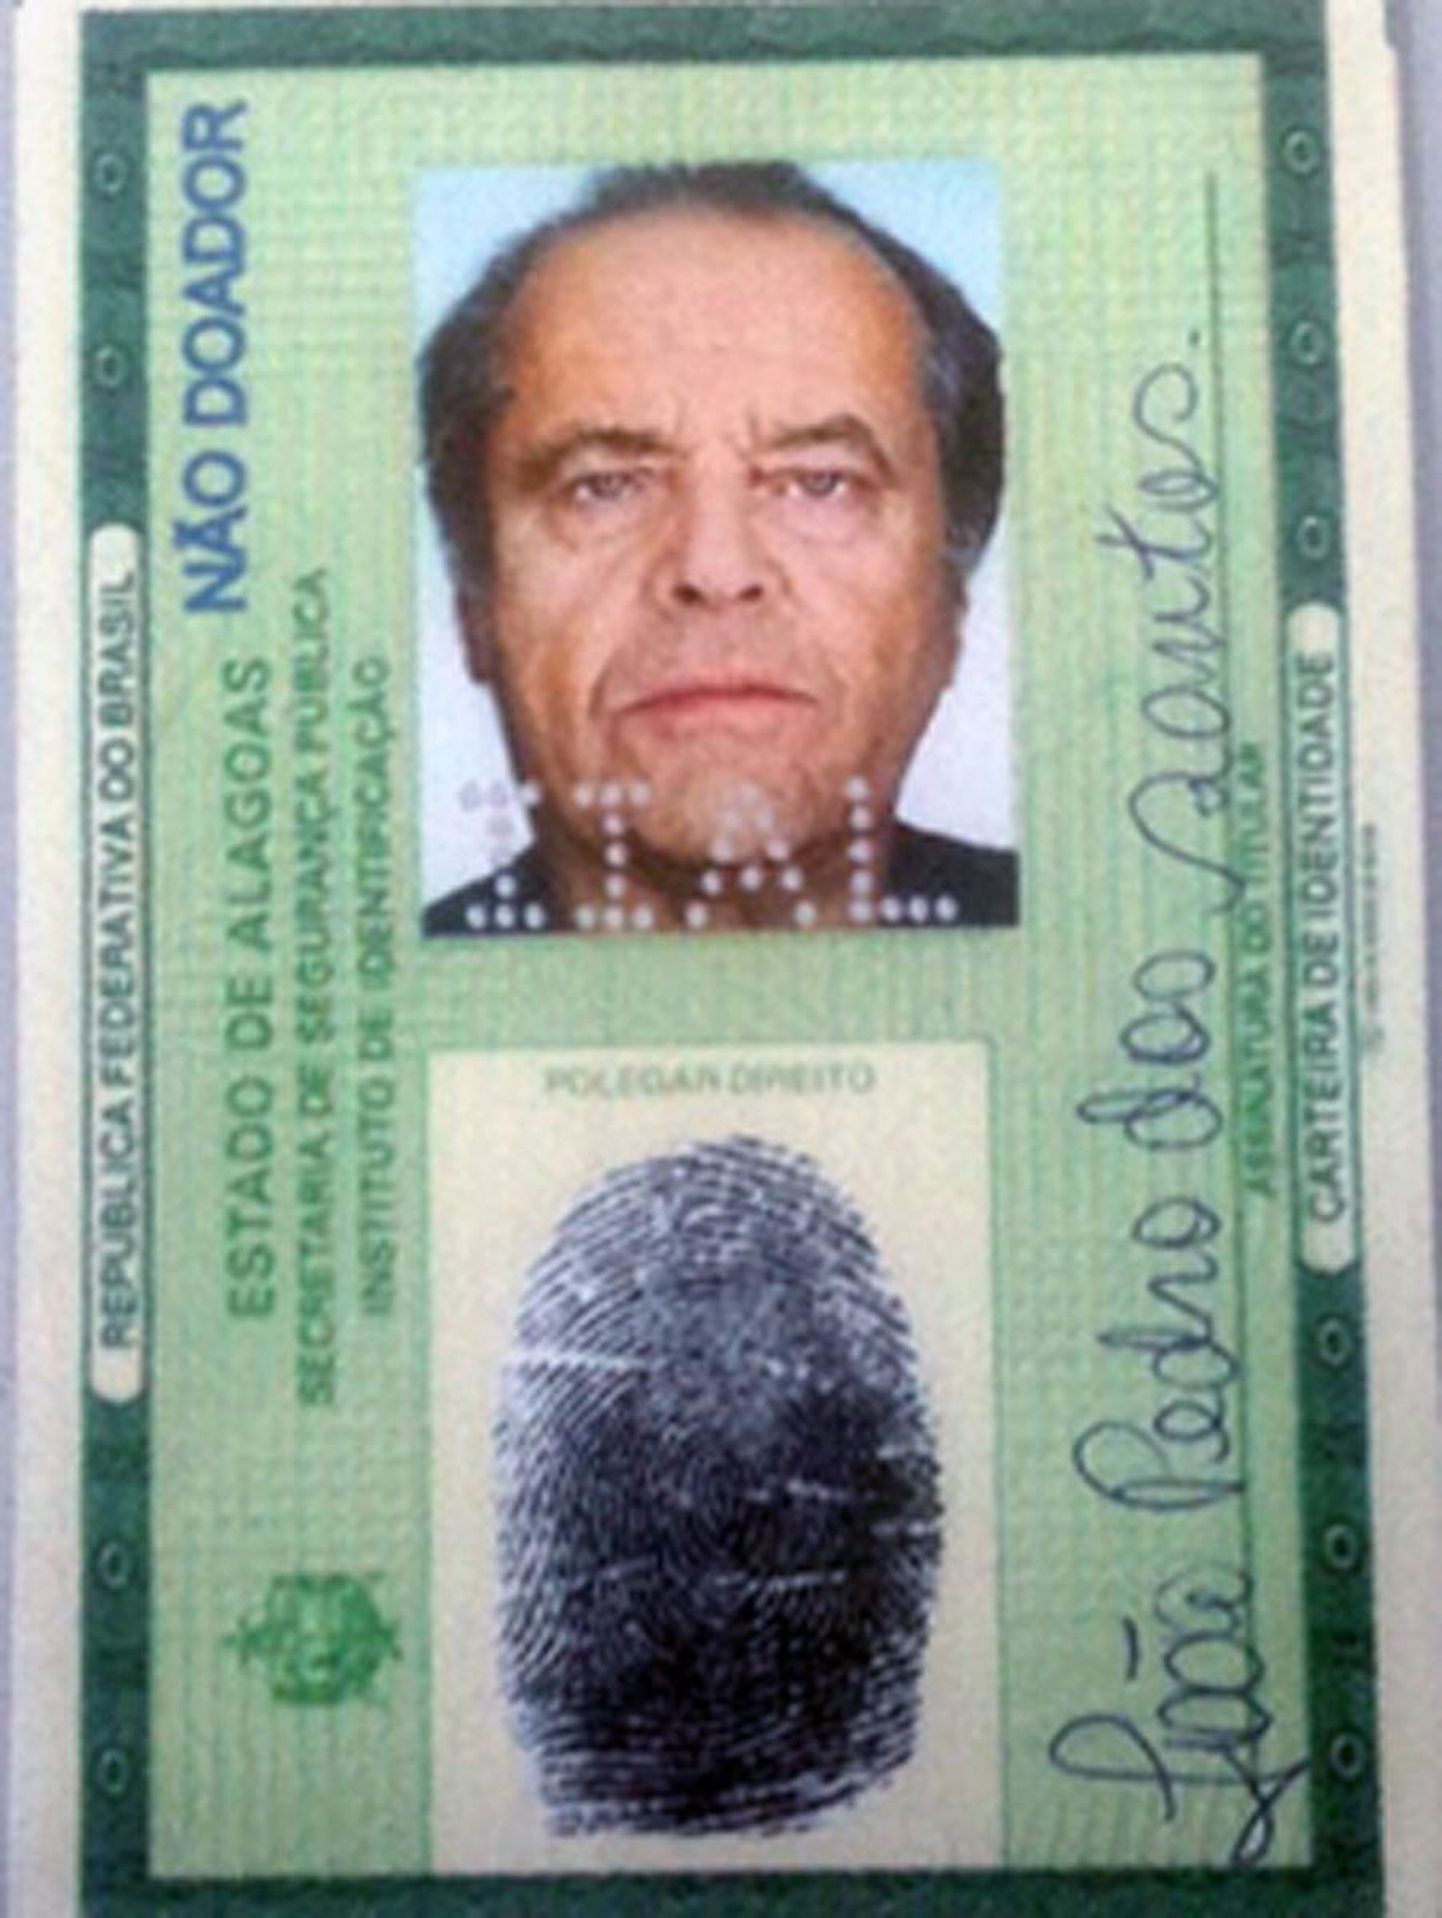 Brasiilia võltsitud ID-kaart Jack Nicholsoni fotoga